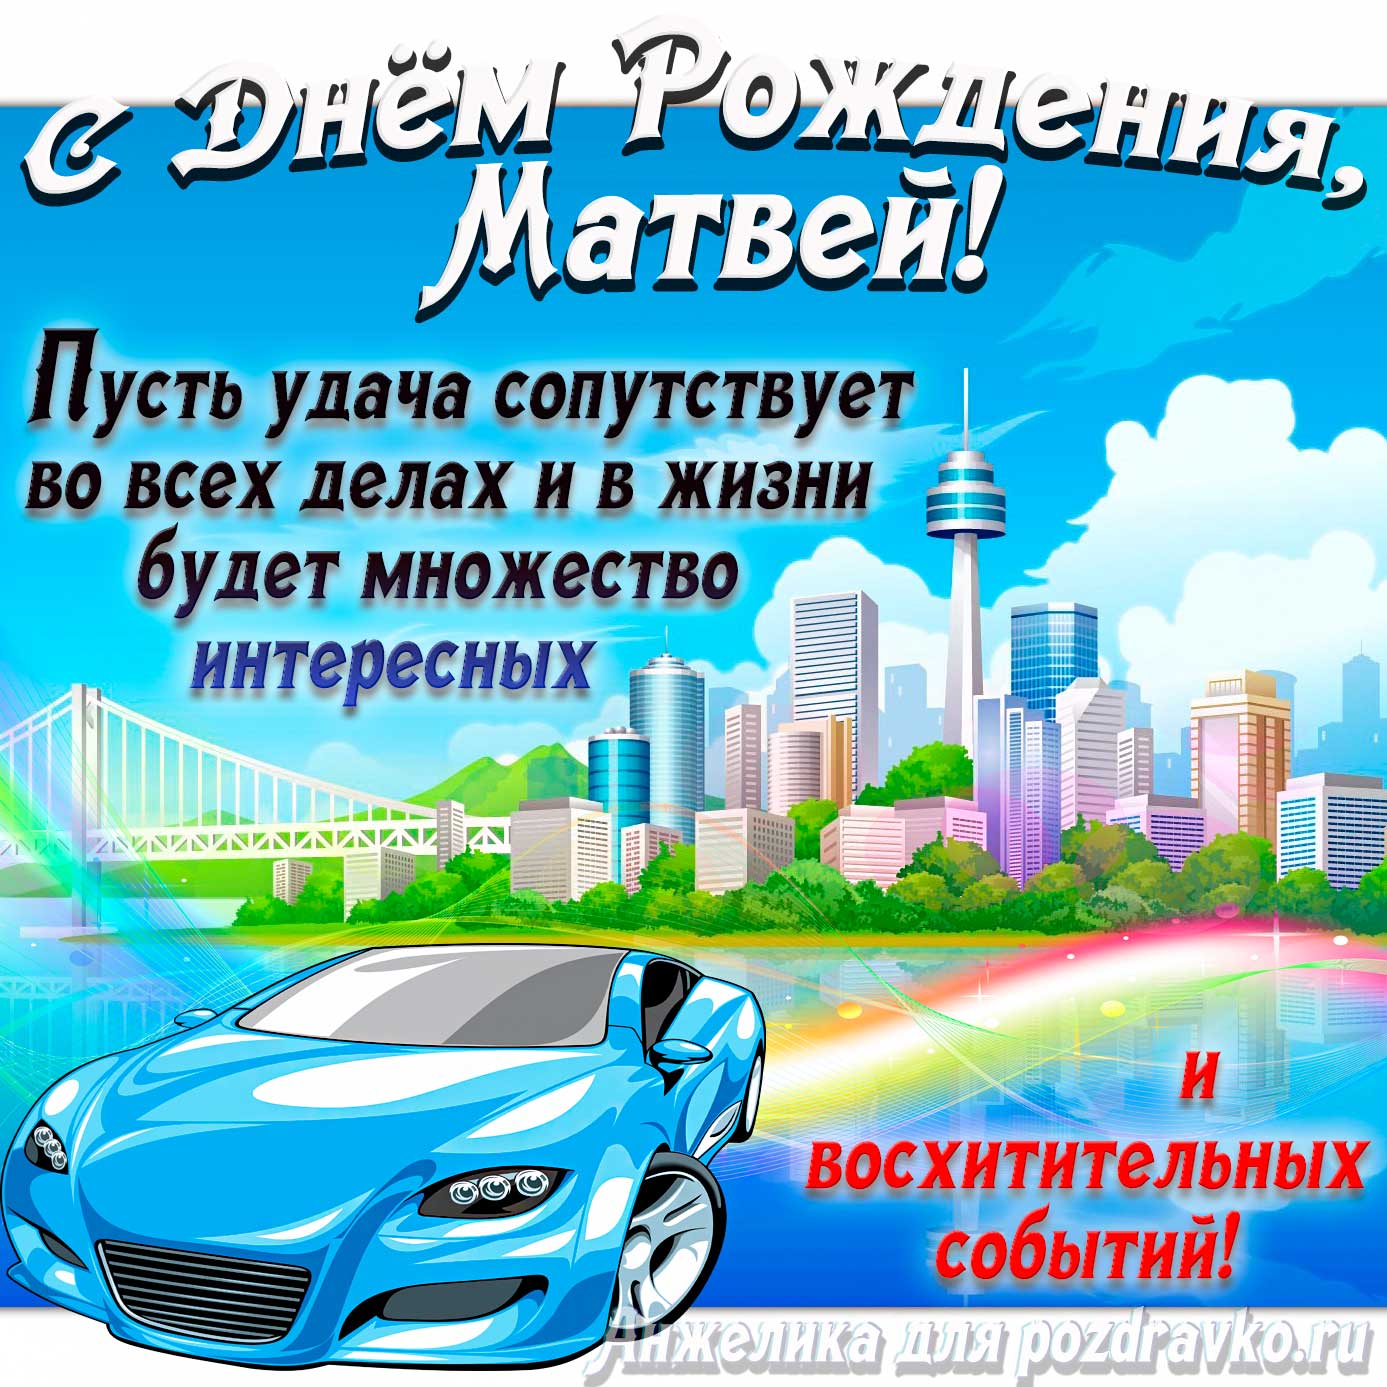 Открытка - с Днём Рождения Матвей с голубой машиной и пожеланием. Скачать бесплатно или отправить картинку.